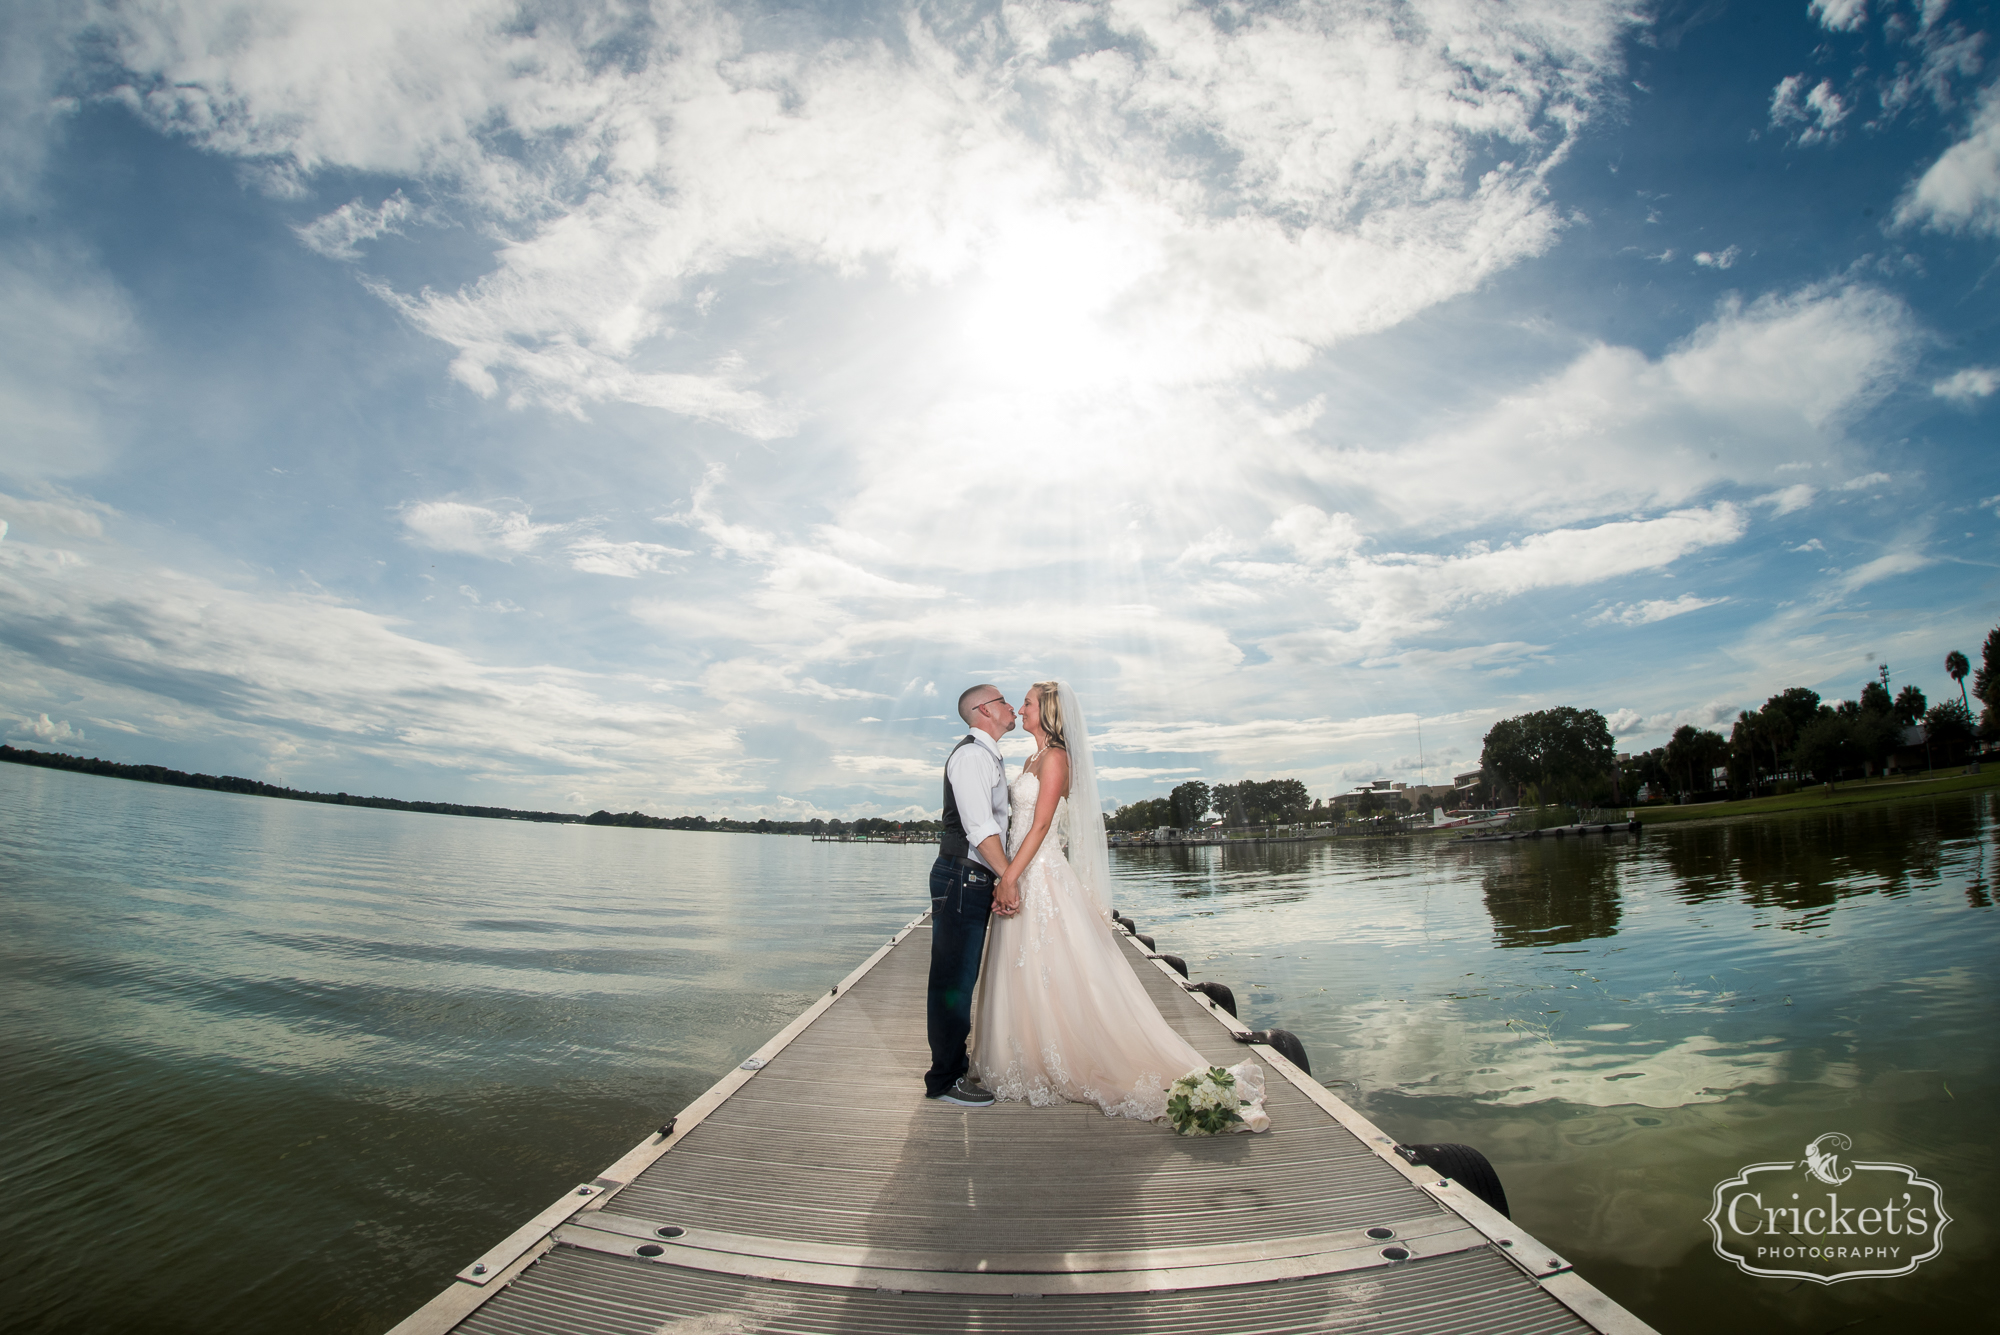 tavares pavilion on the lake wedding photography